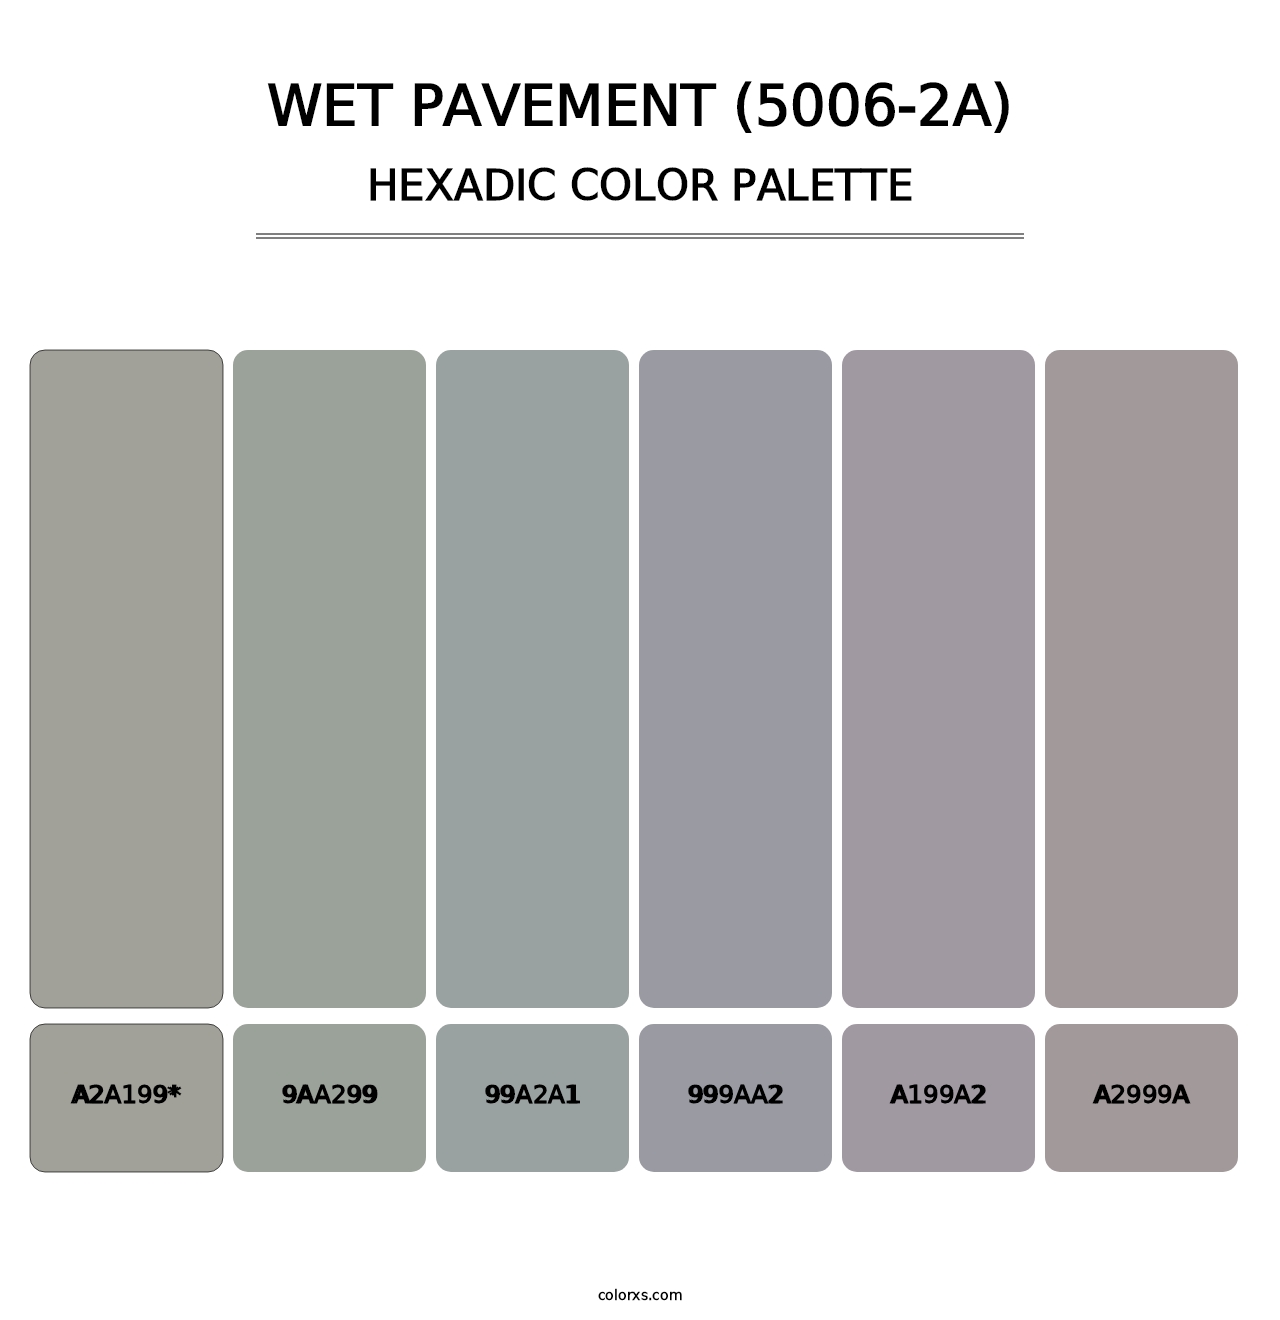 Wet Pavement (5006-2A) - Hexadic Color Palette